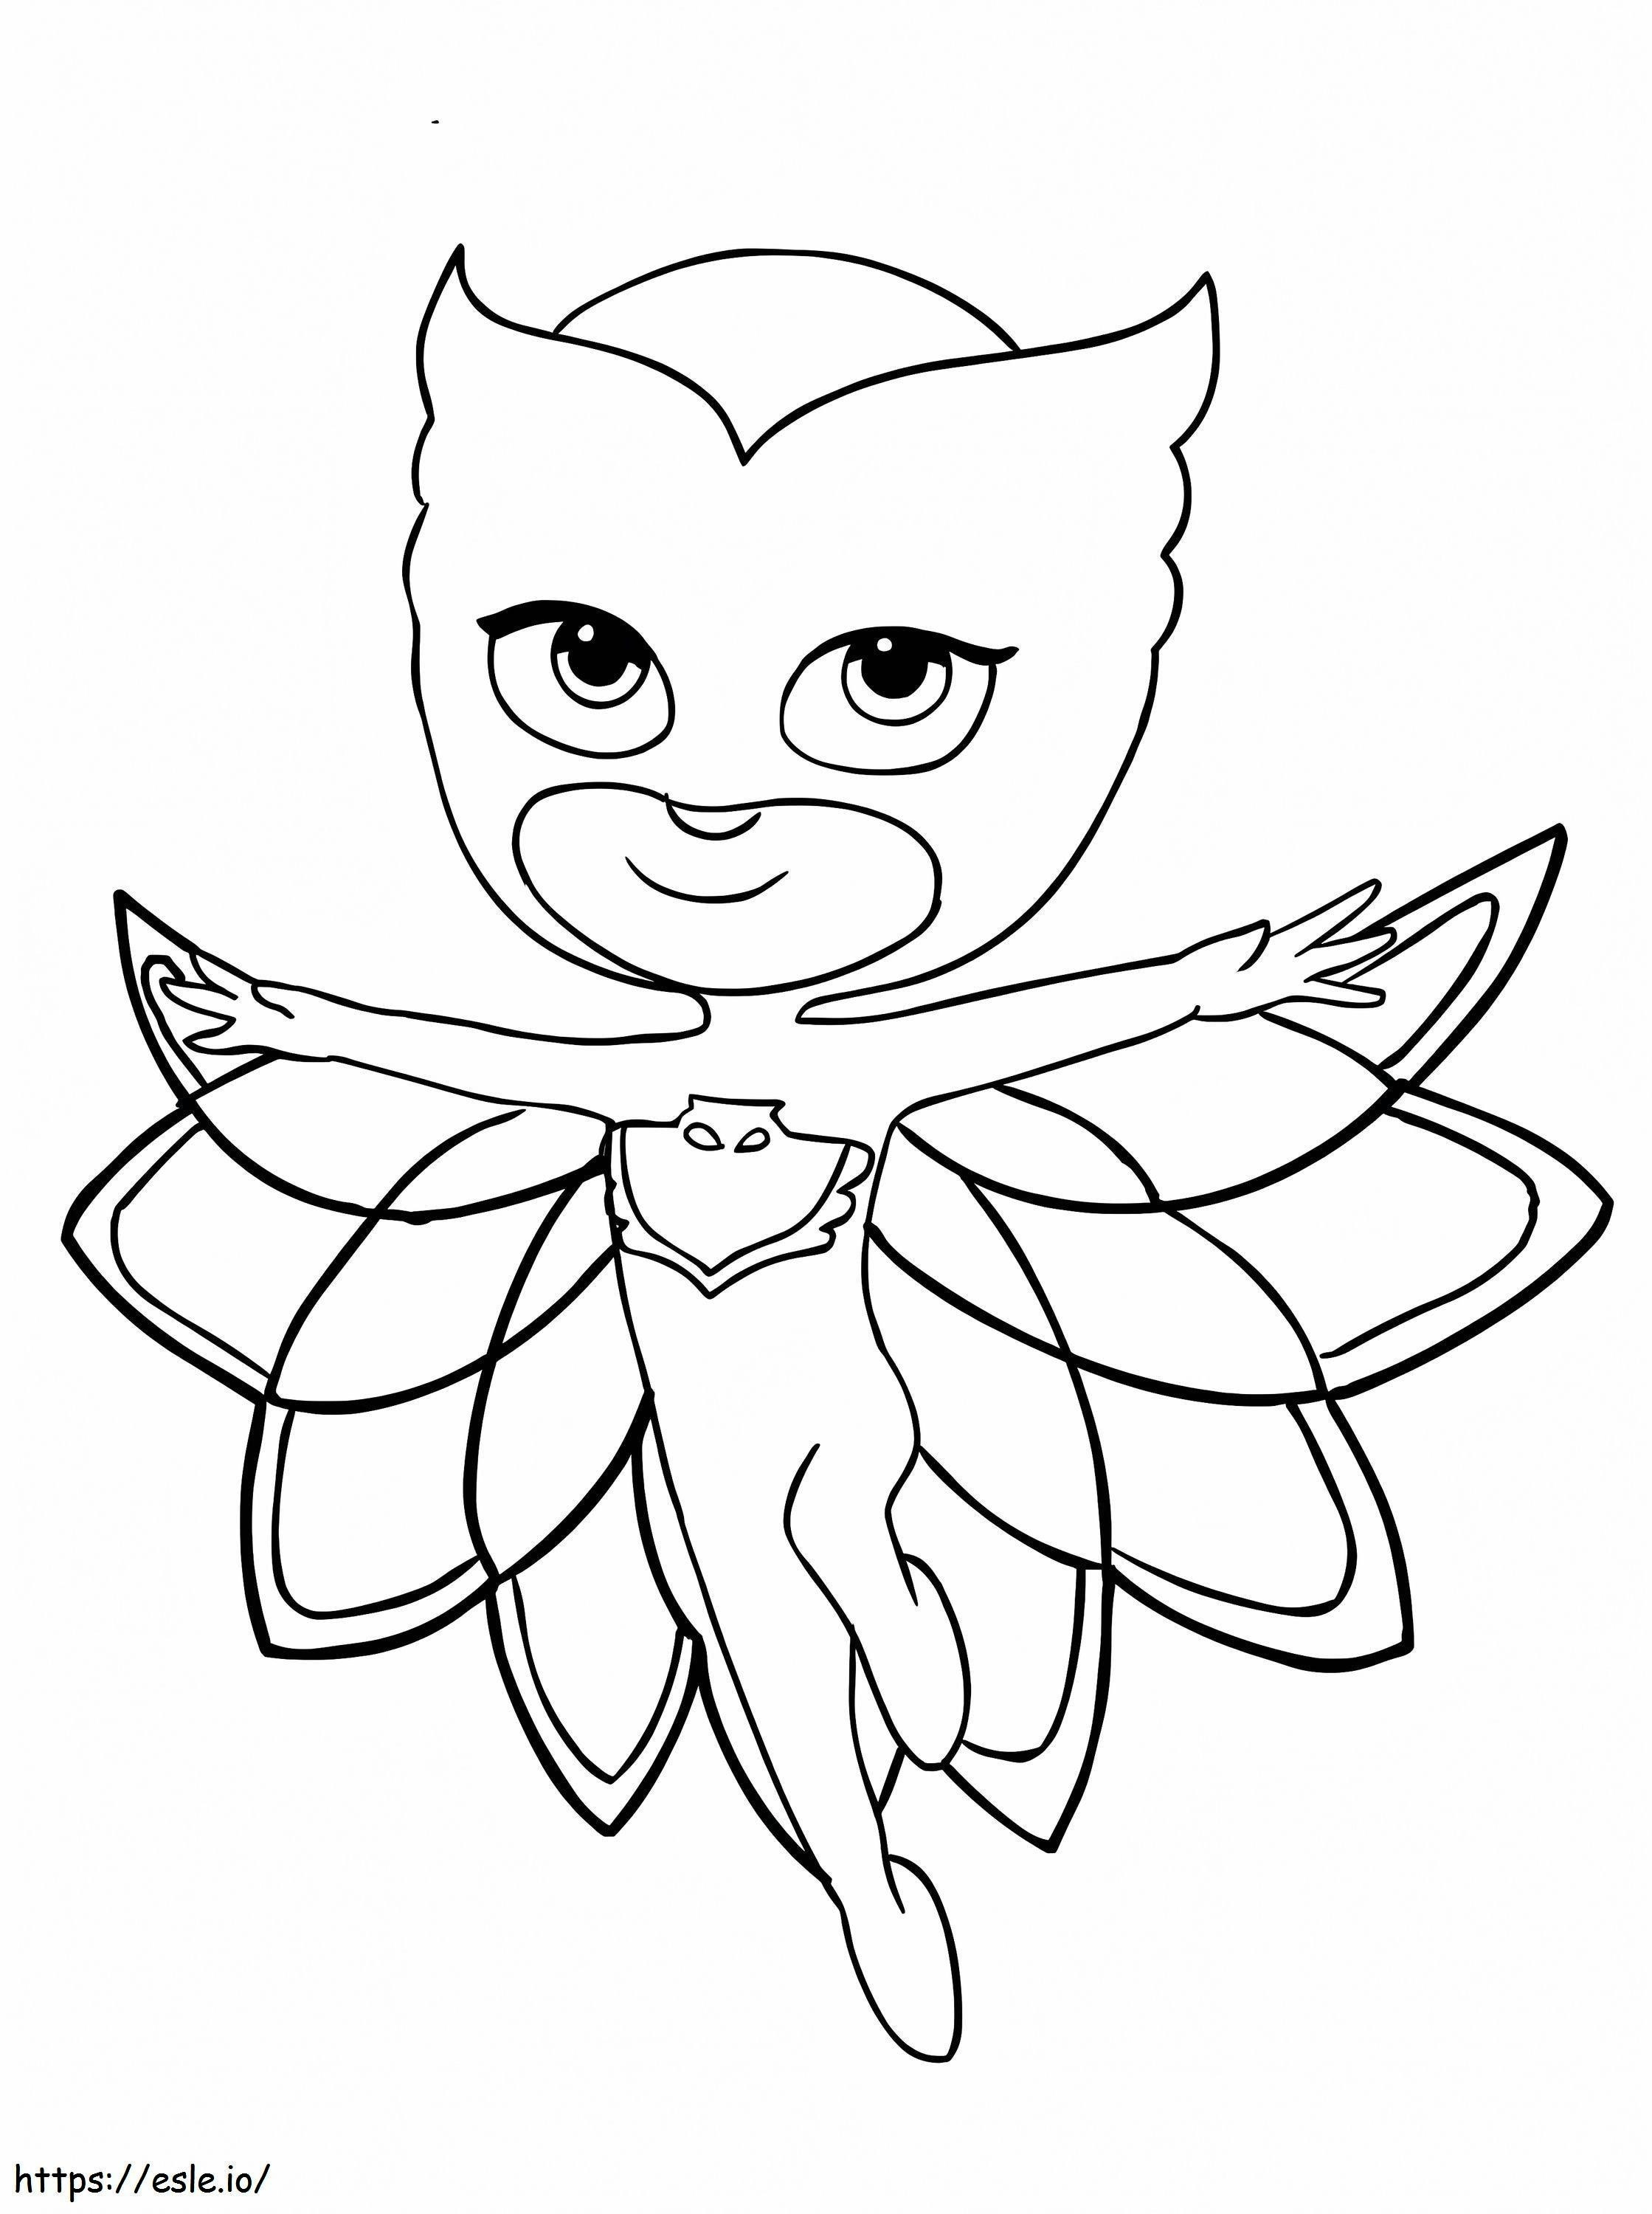 Owlette de PJ Masks para colorear